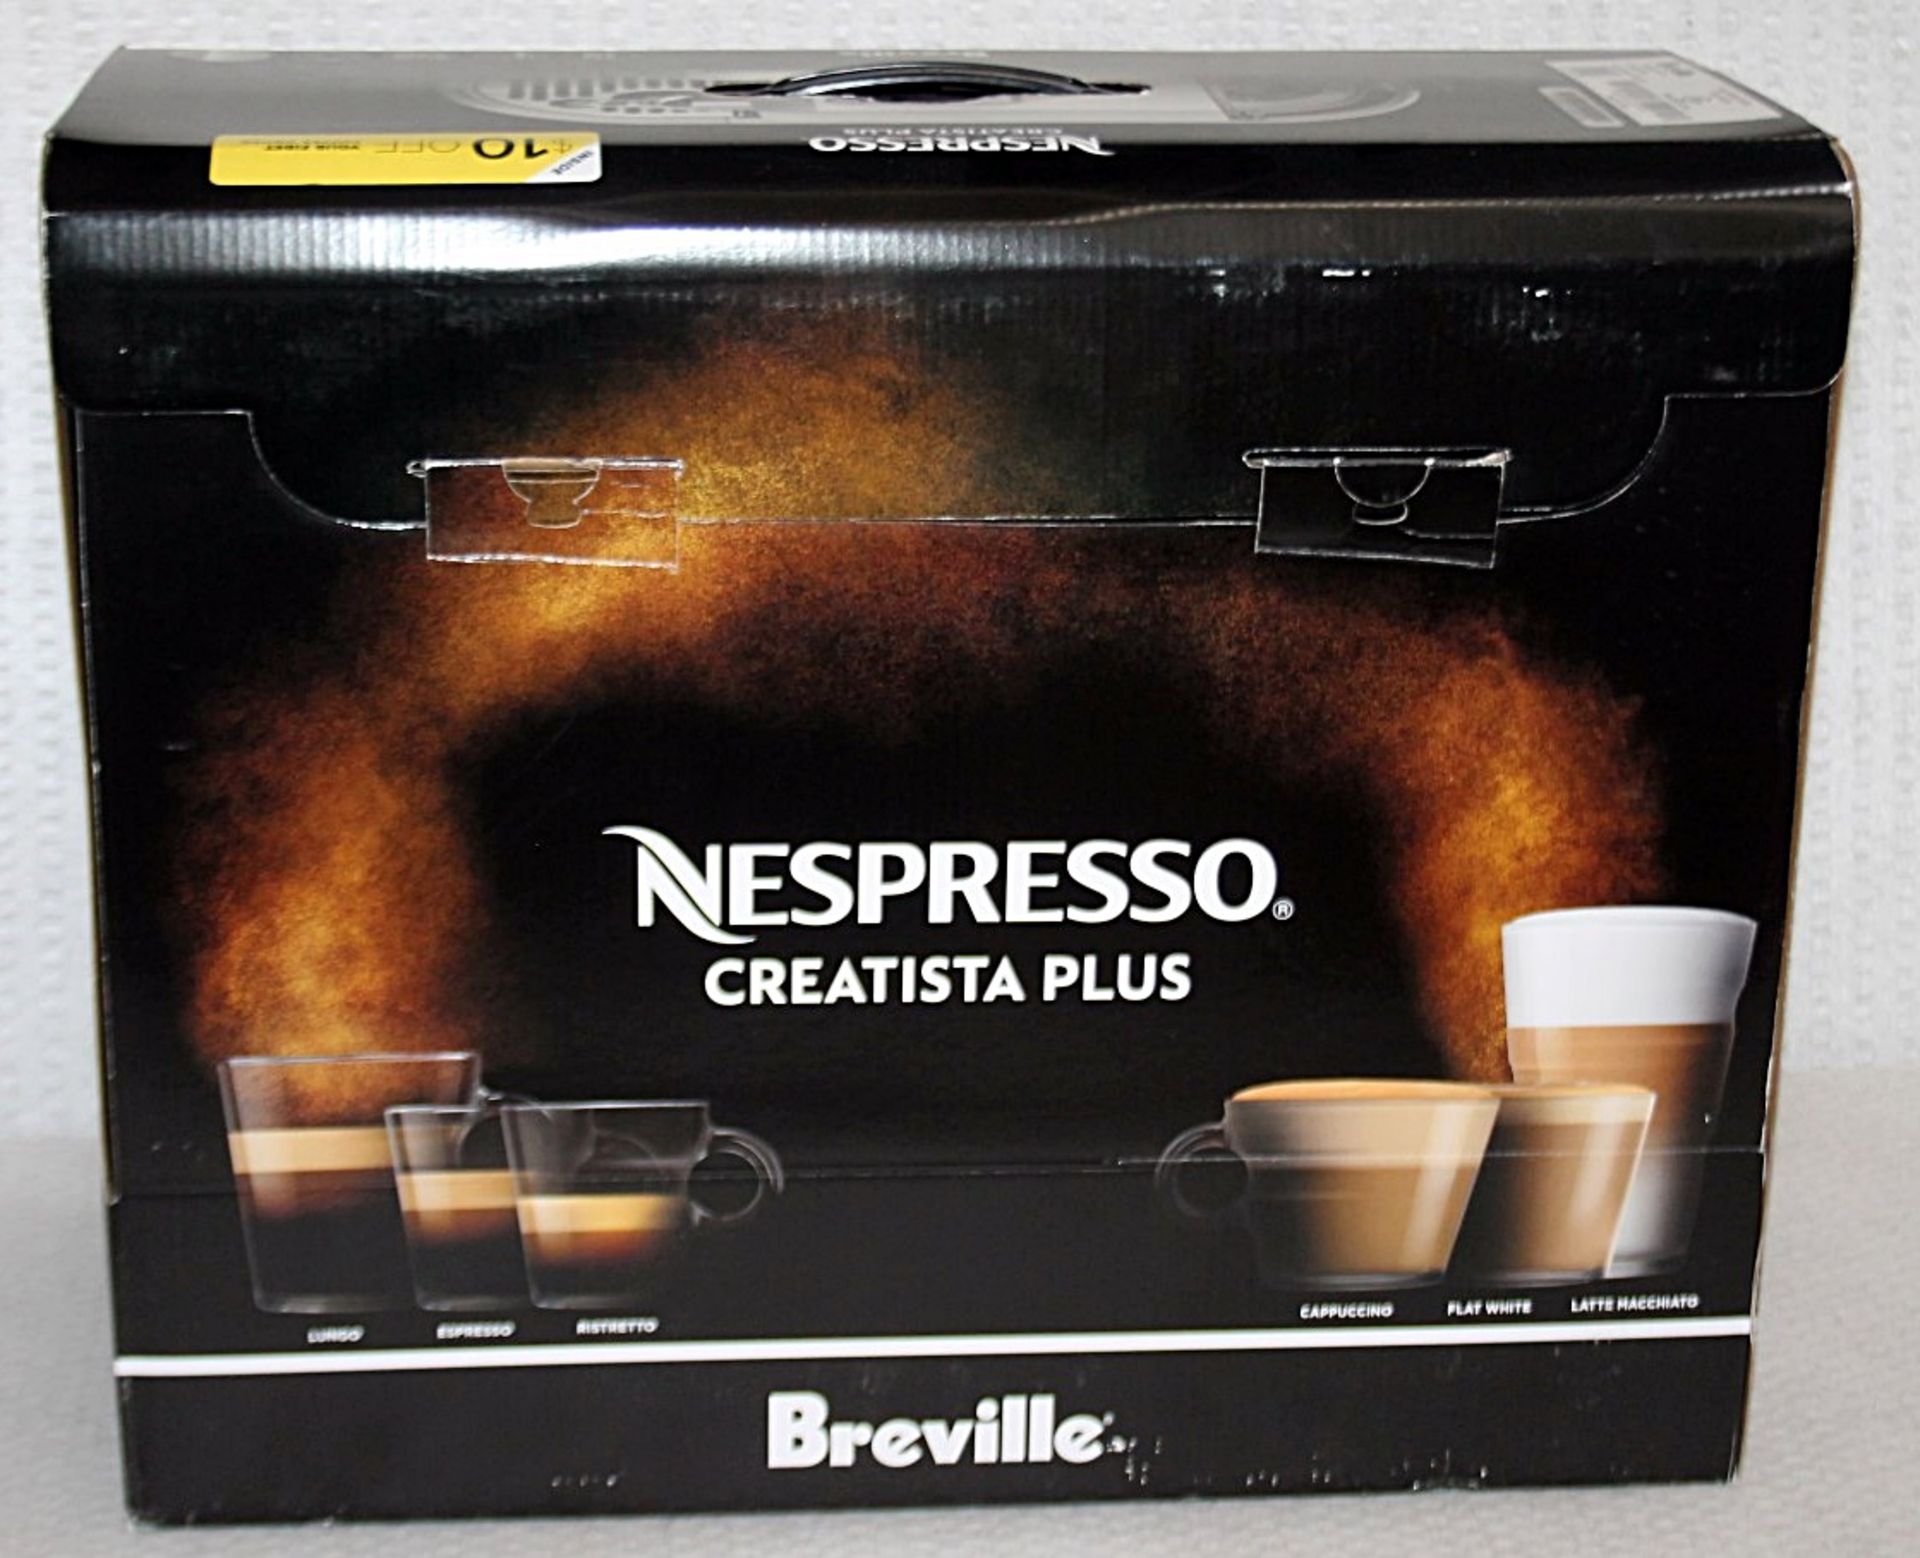 1 x NESPRESSO 'Creatista Plus' Coffee Machine In Silver - Original Price £479.95 - Boxed Stock - Image 18 of 18